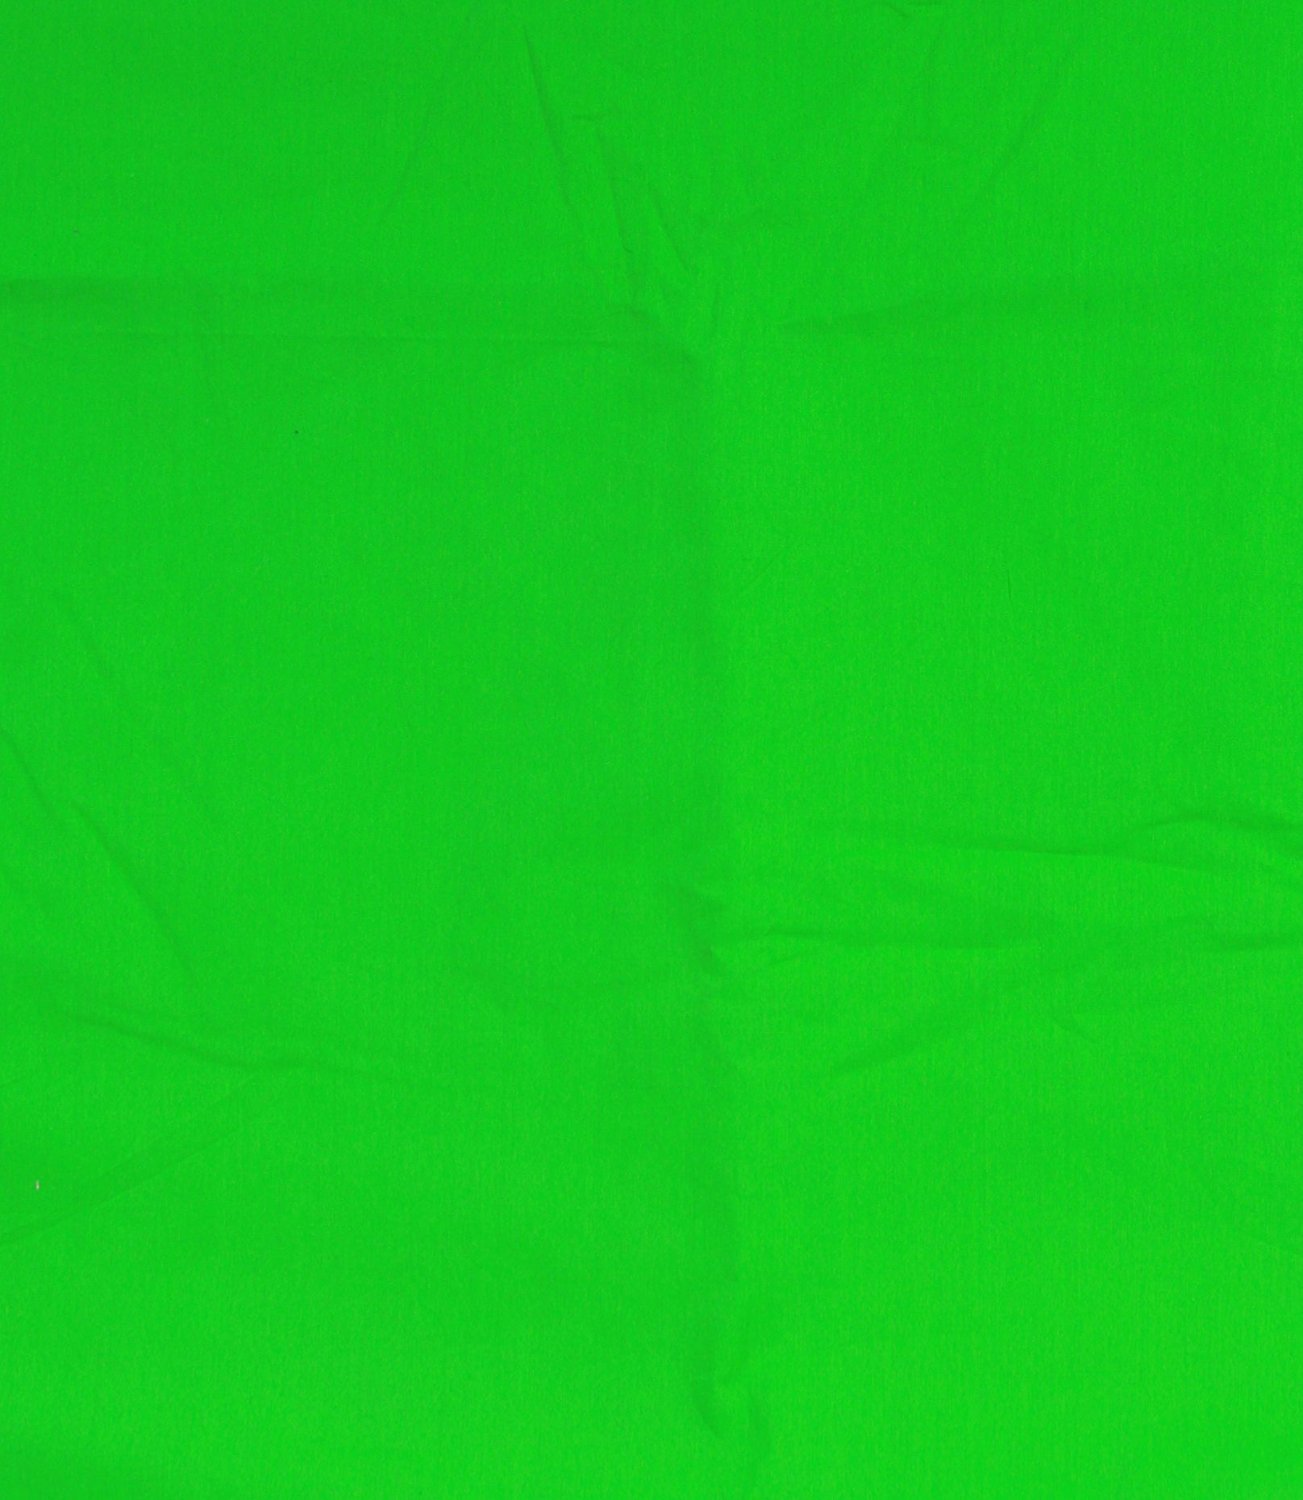 fond d'écran vert,vert,bleu,feuille,rouge,jaune